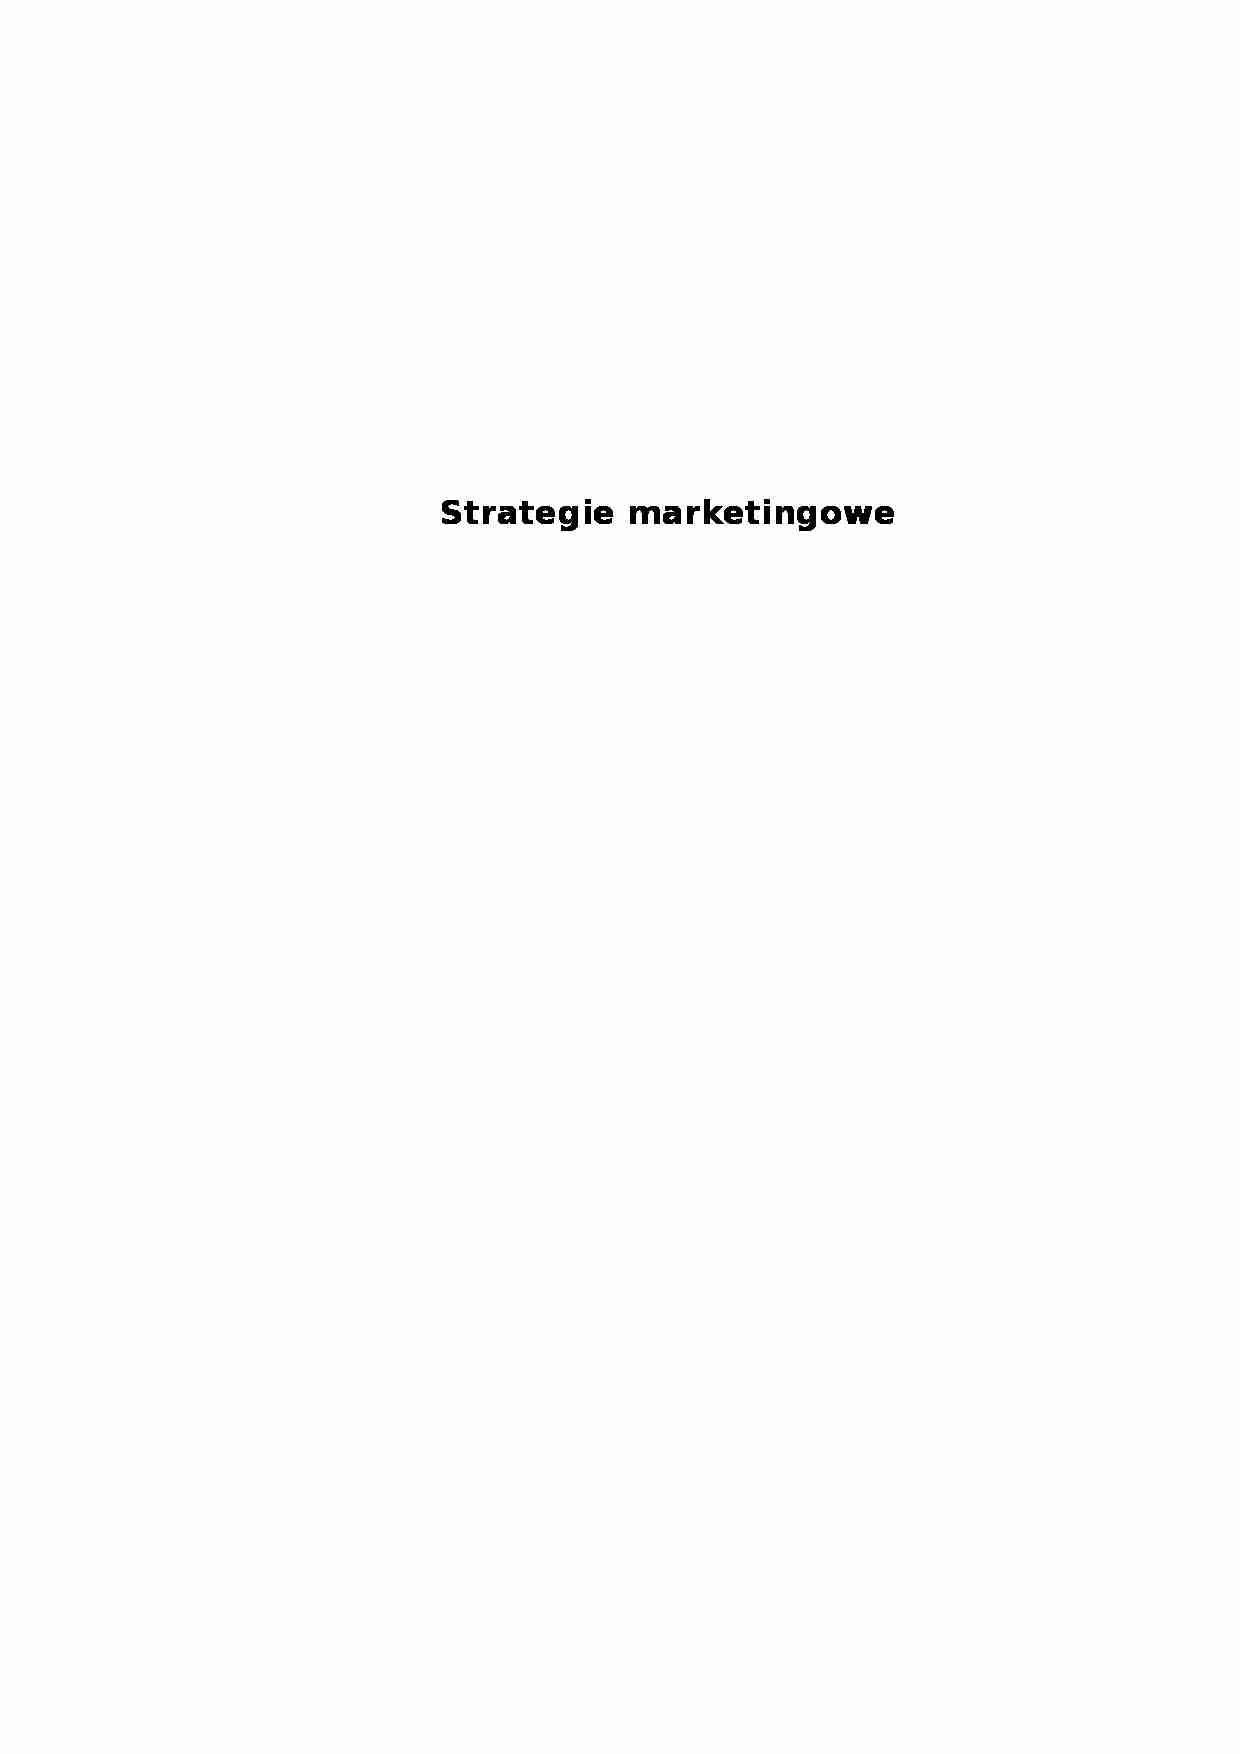 Strategie marketingowe - strona 1